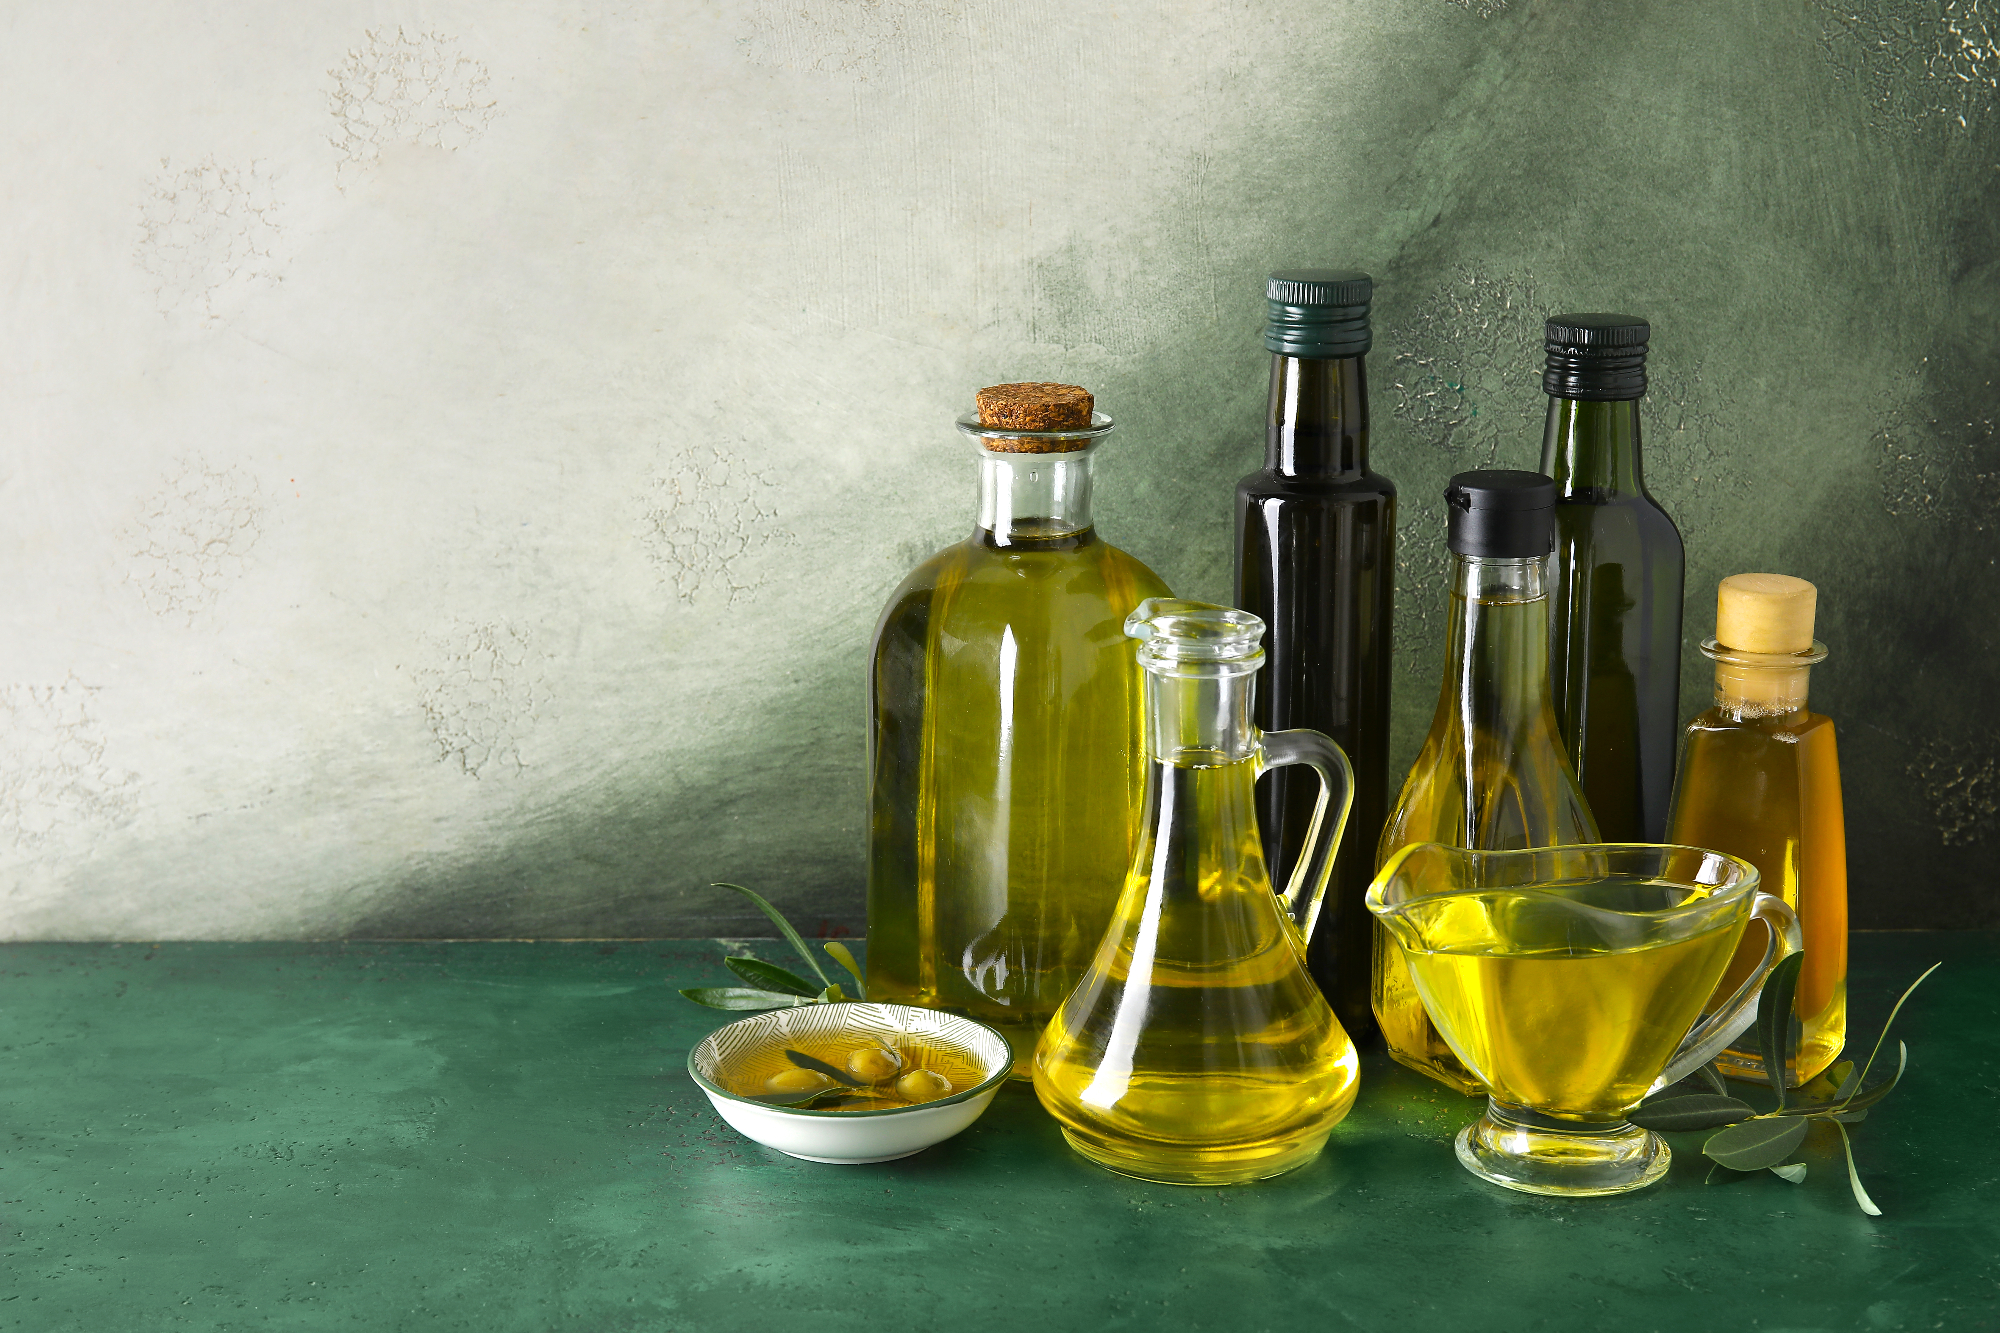 Ekstra deviško oljčno olje slovenske Istre je res okusno